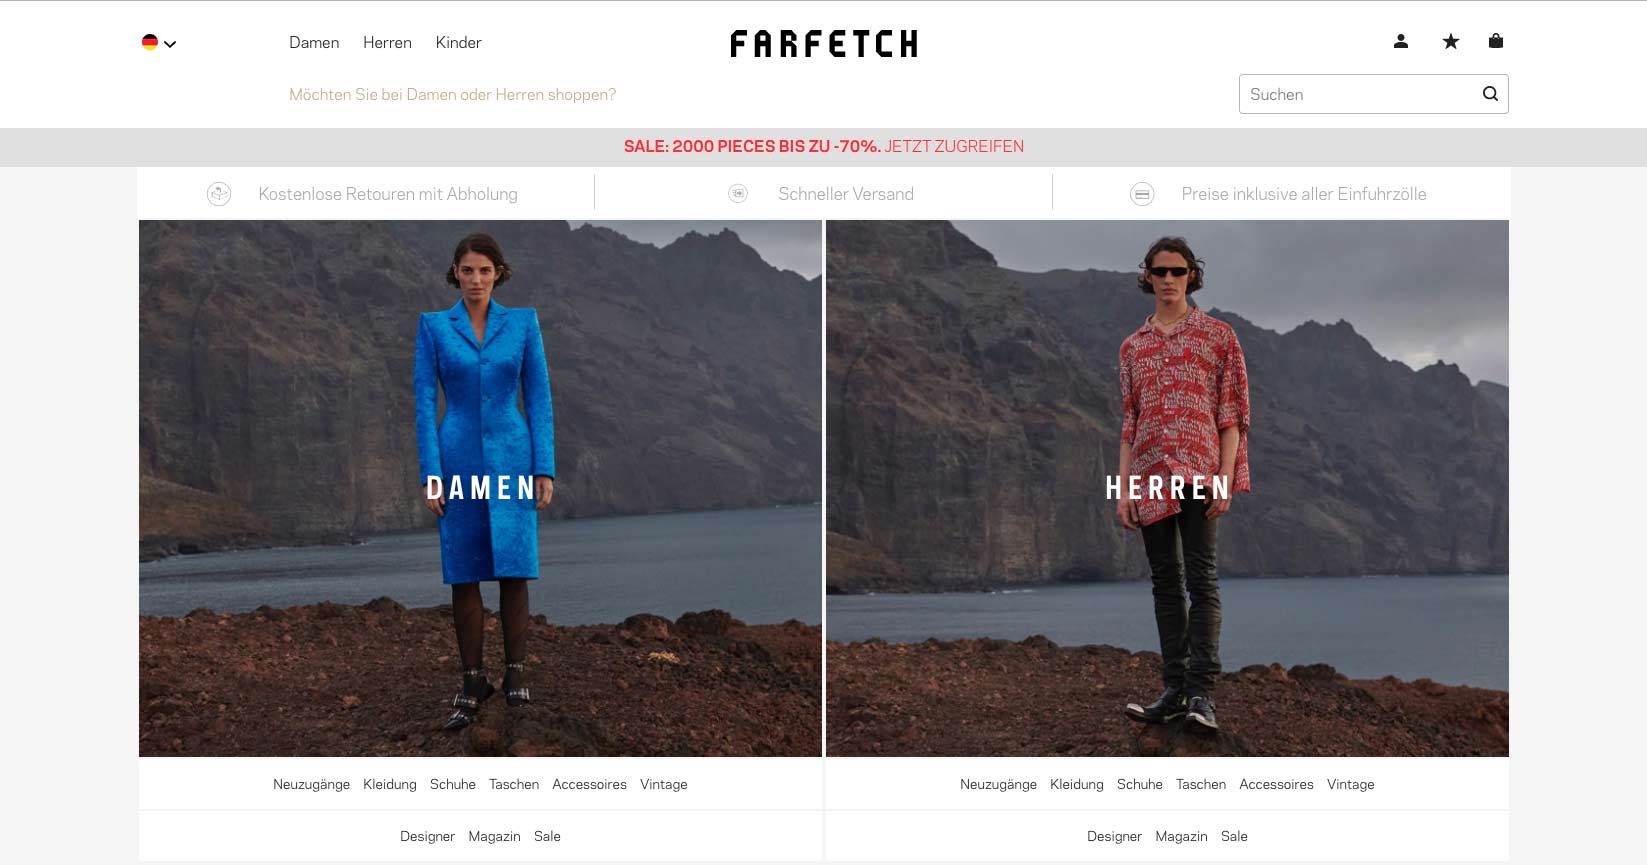 Farfetch ist ein internationales E-Commerce Unternehmen, das Designermode von Boutiquen verkauft.